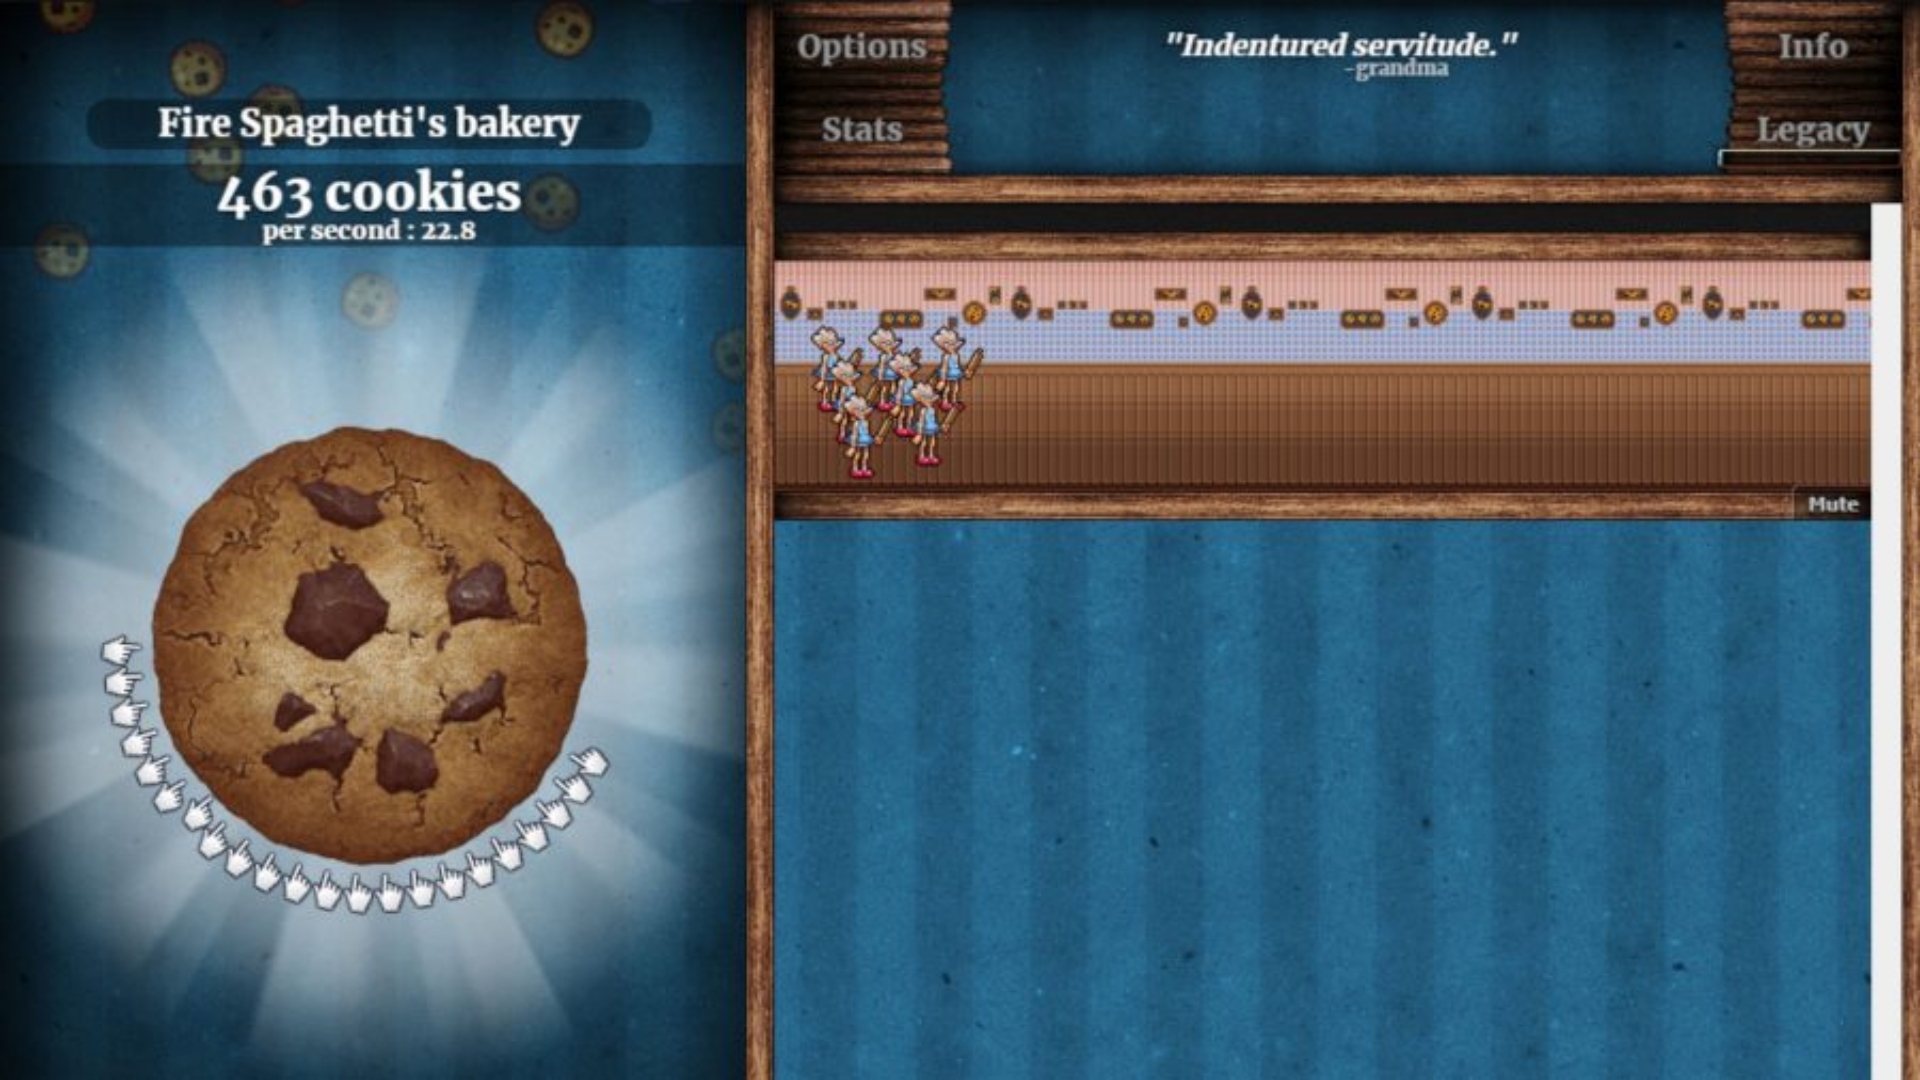 Giochi online: clicker cookie. L'immagine mostra un cookie gigante e un po 'di produzione di biscotti